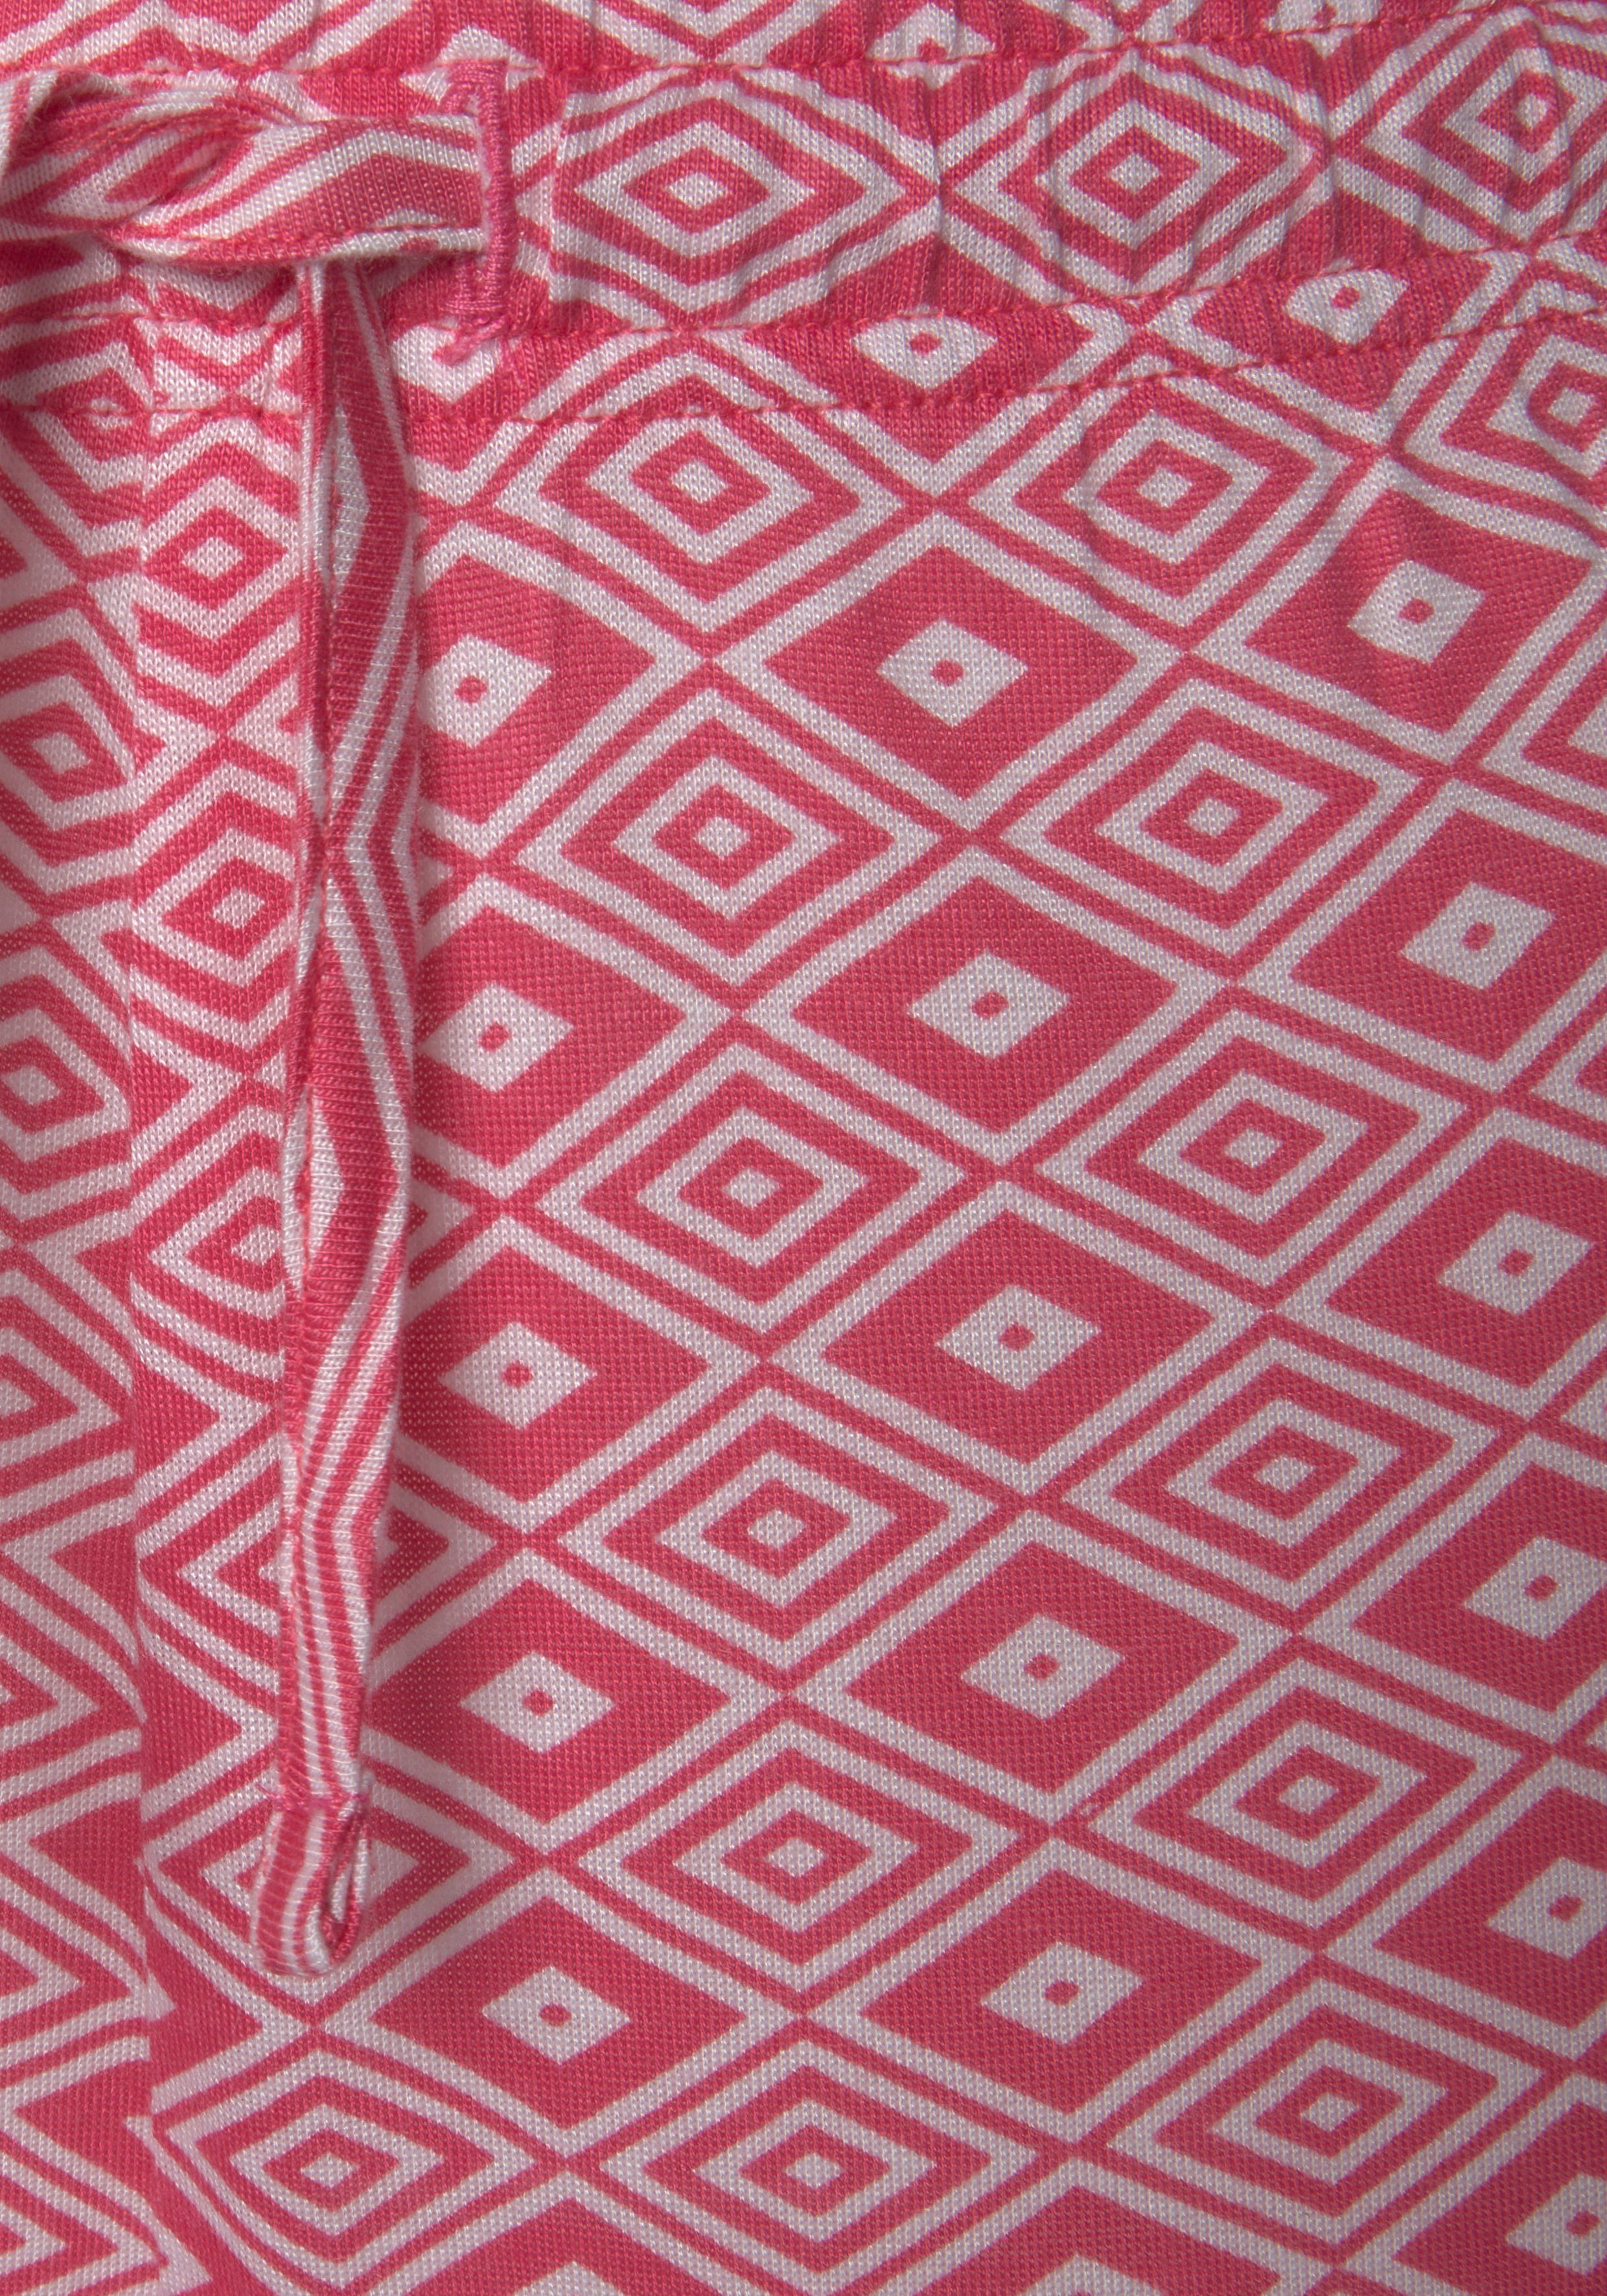 Schlafhose Vivance bedruckt schönem Ethno-Design Dreams in pink